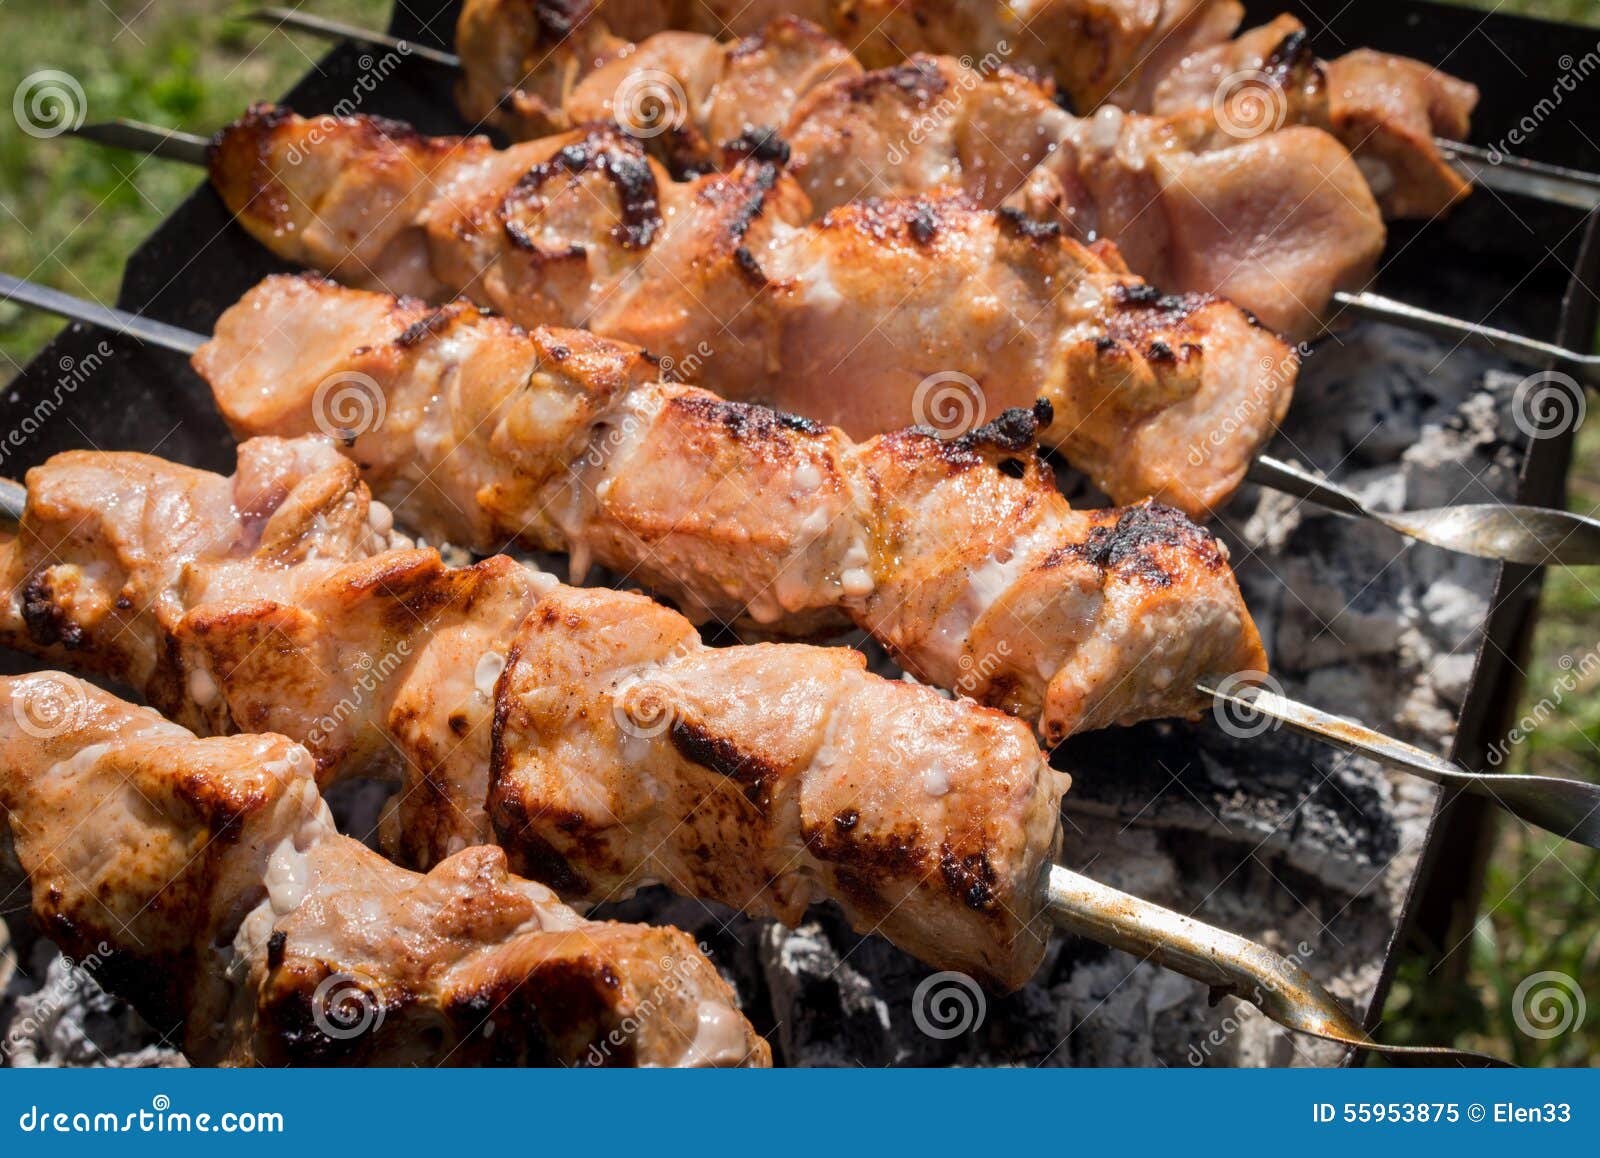 Shashlik stock image. Image of cuisine, outdoor, orange - 55953875